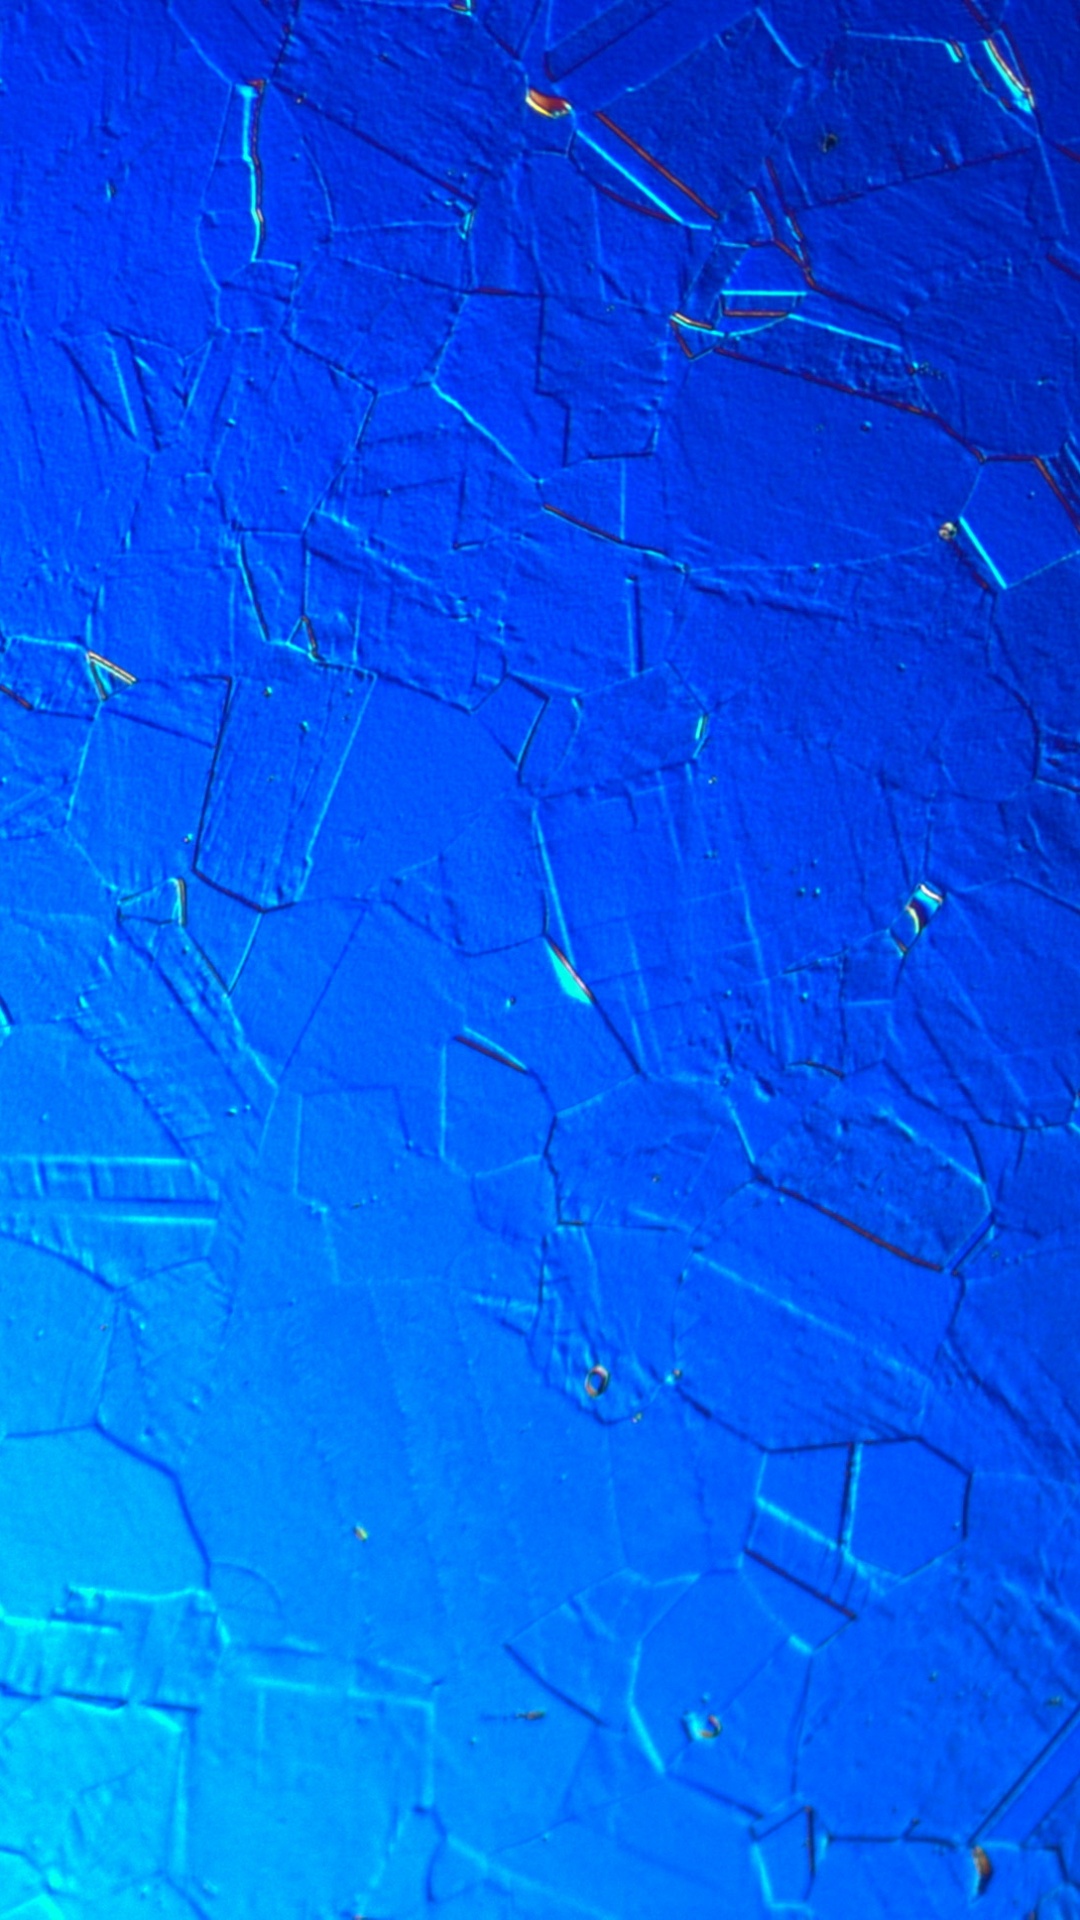 Pared Pintada de Azul y Blanco. Wallpaper in 1080x1920 Resolution